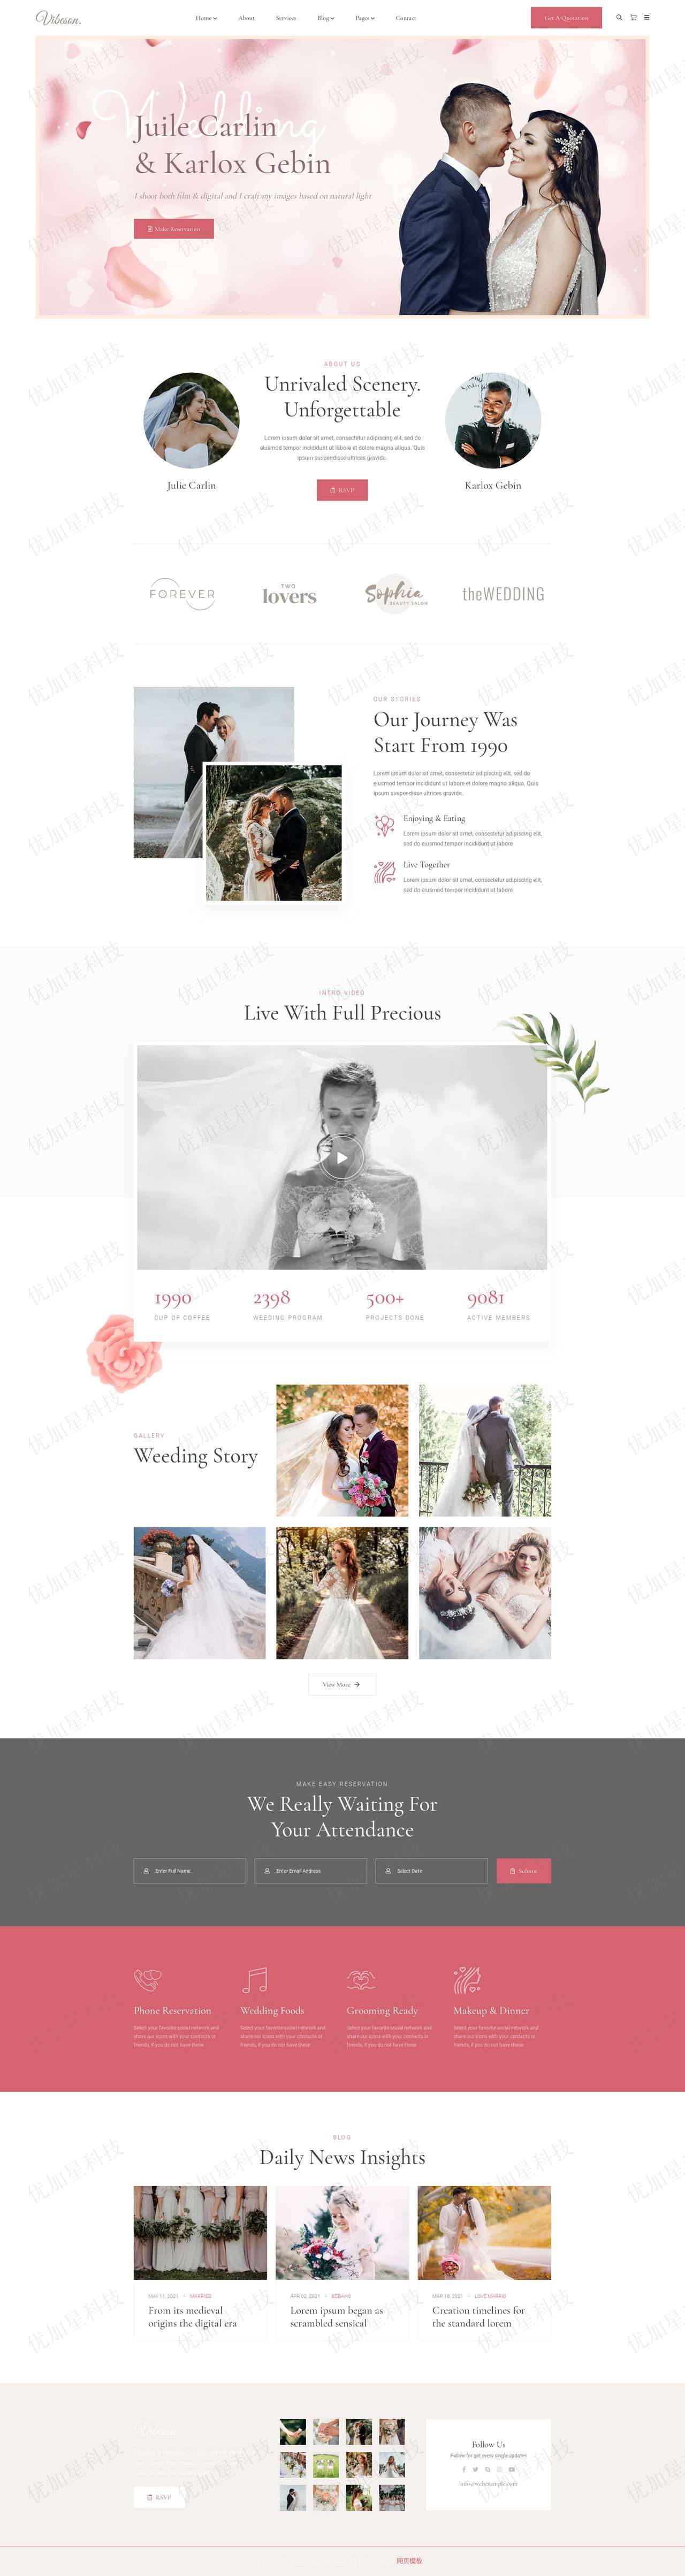 婚礼活动策划摄影HTML5模板源码_优加星网络科技